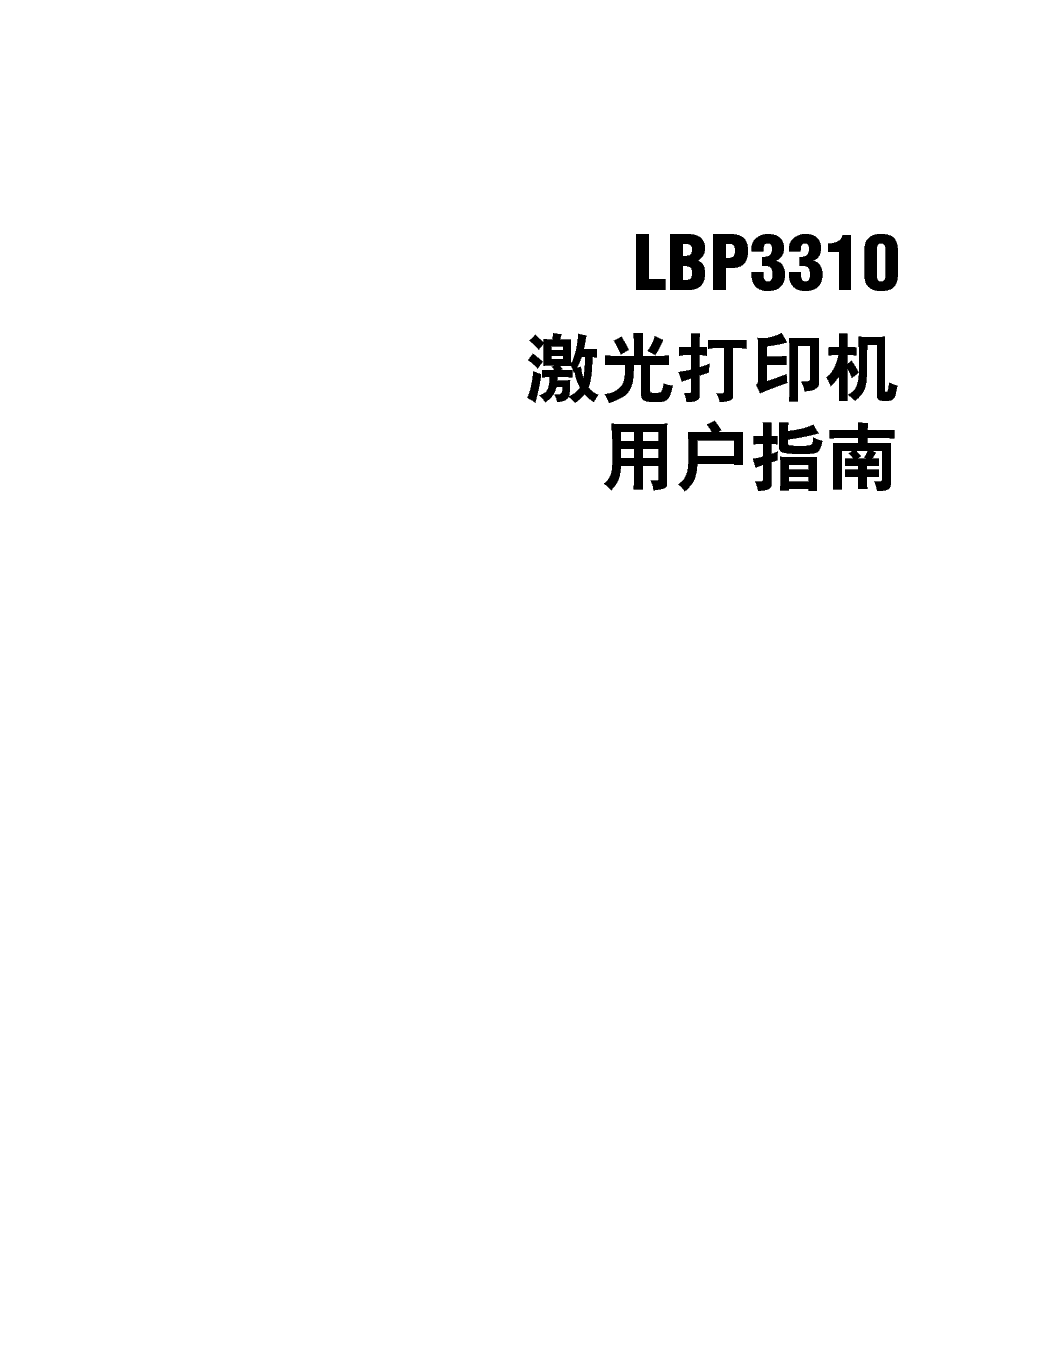 佳能 Canon LBP3310 用户指南 第1页